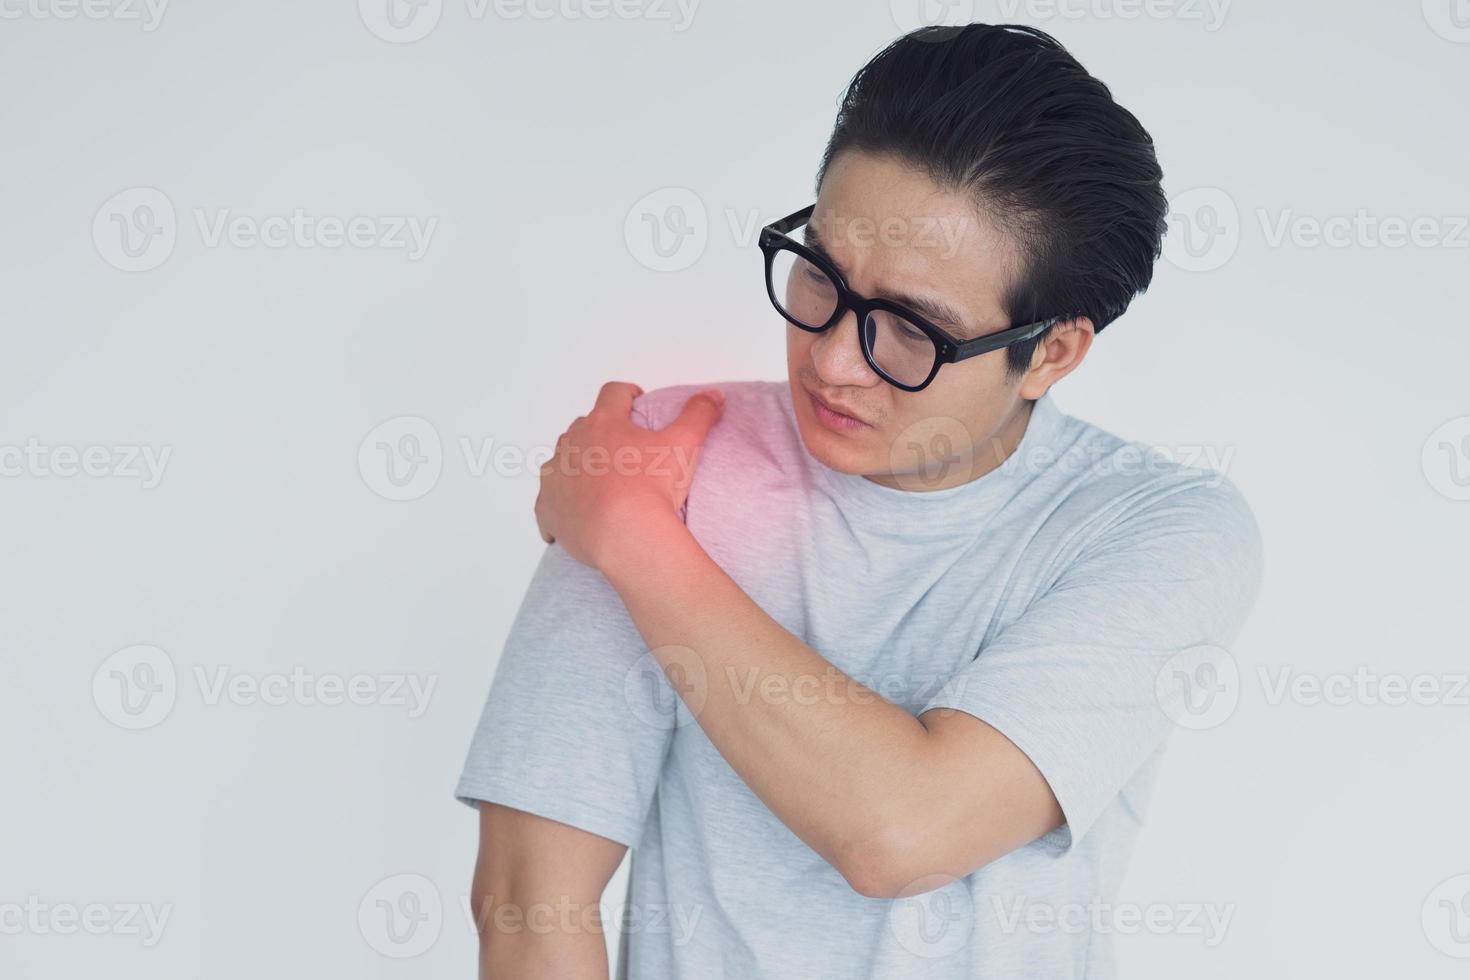 photo d'un homme asiatique souffrant d'une douleur à l'épaule